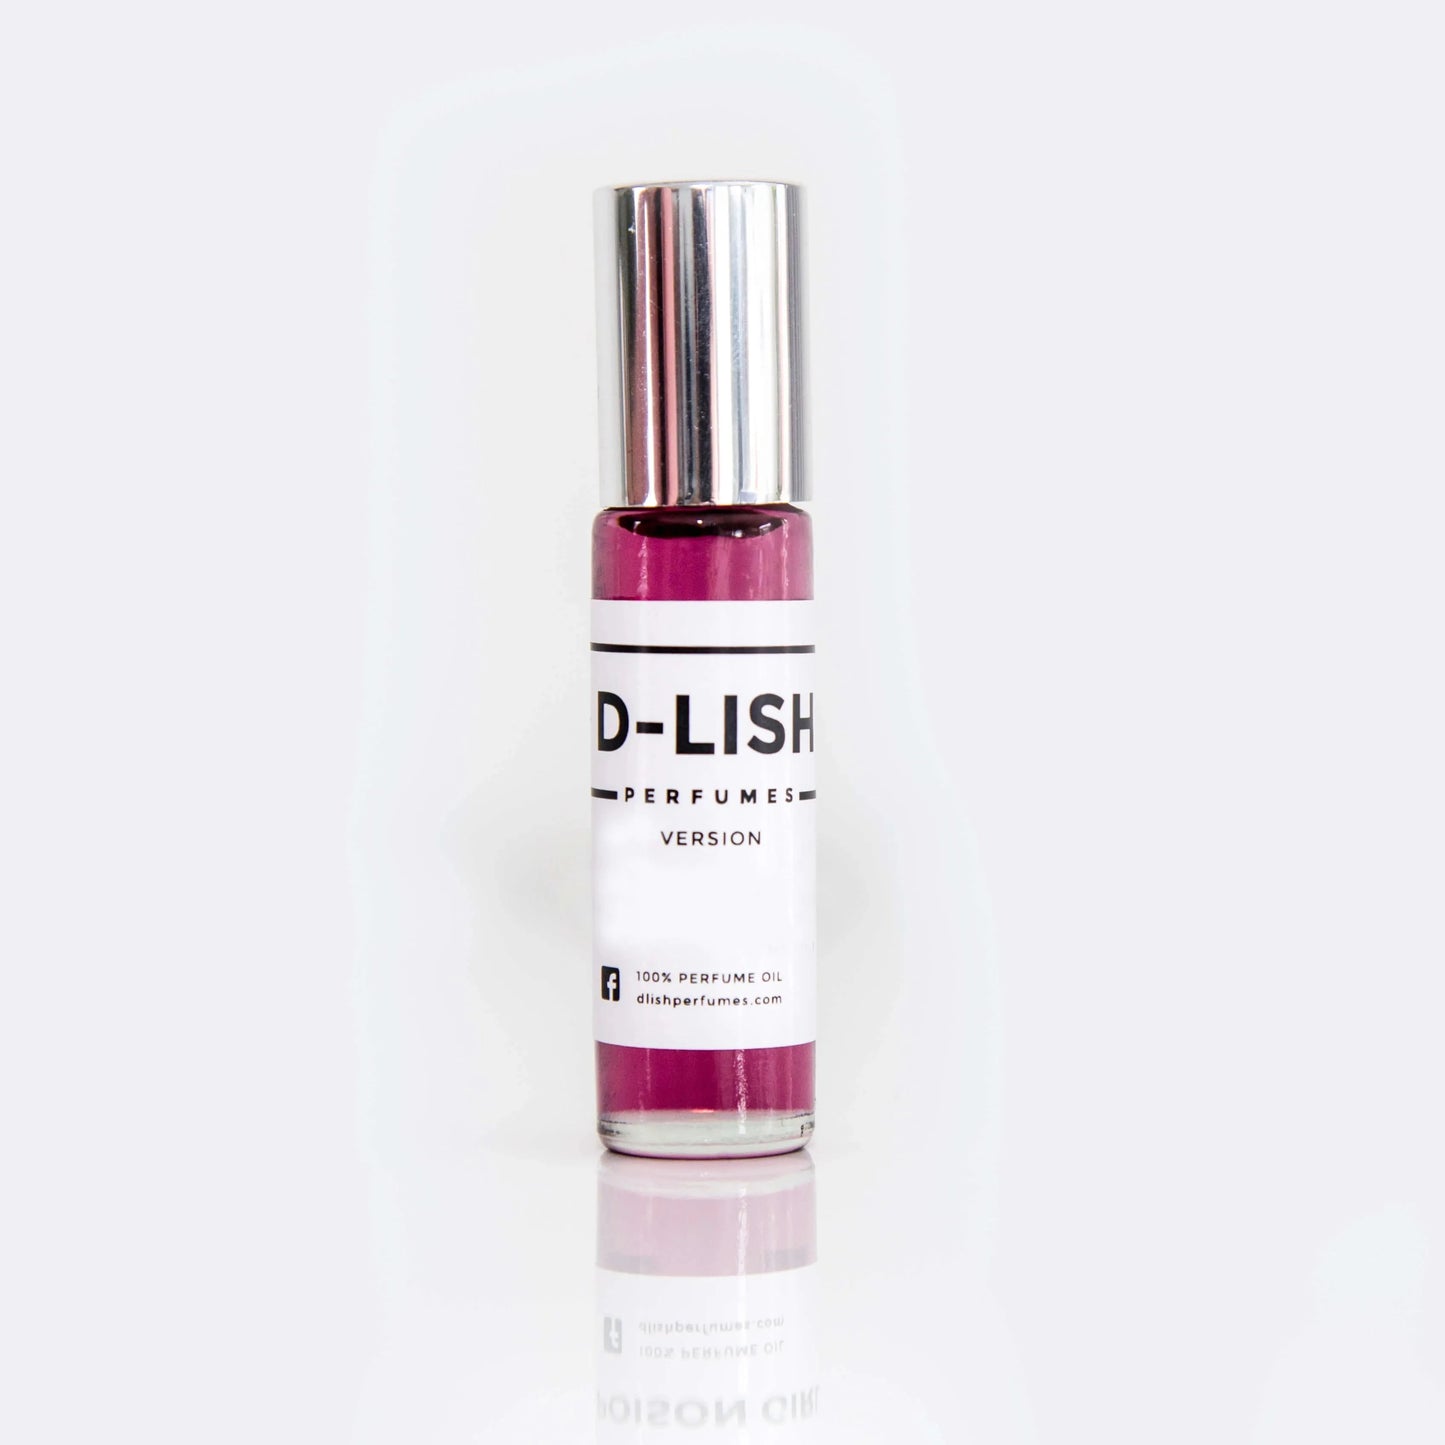 D-Lish Version of Dior Perfumes